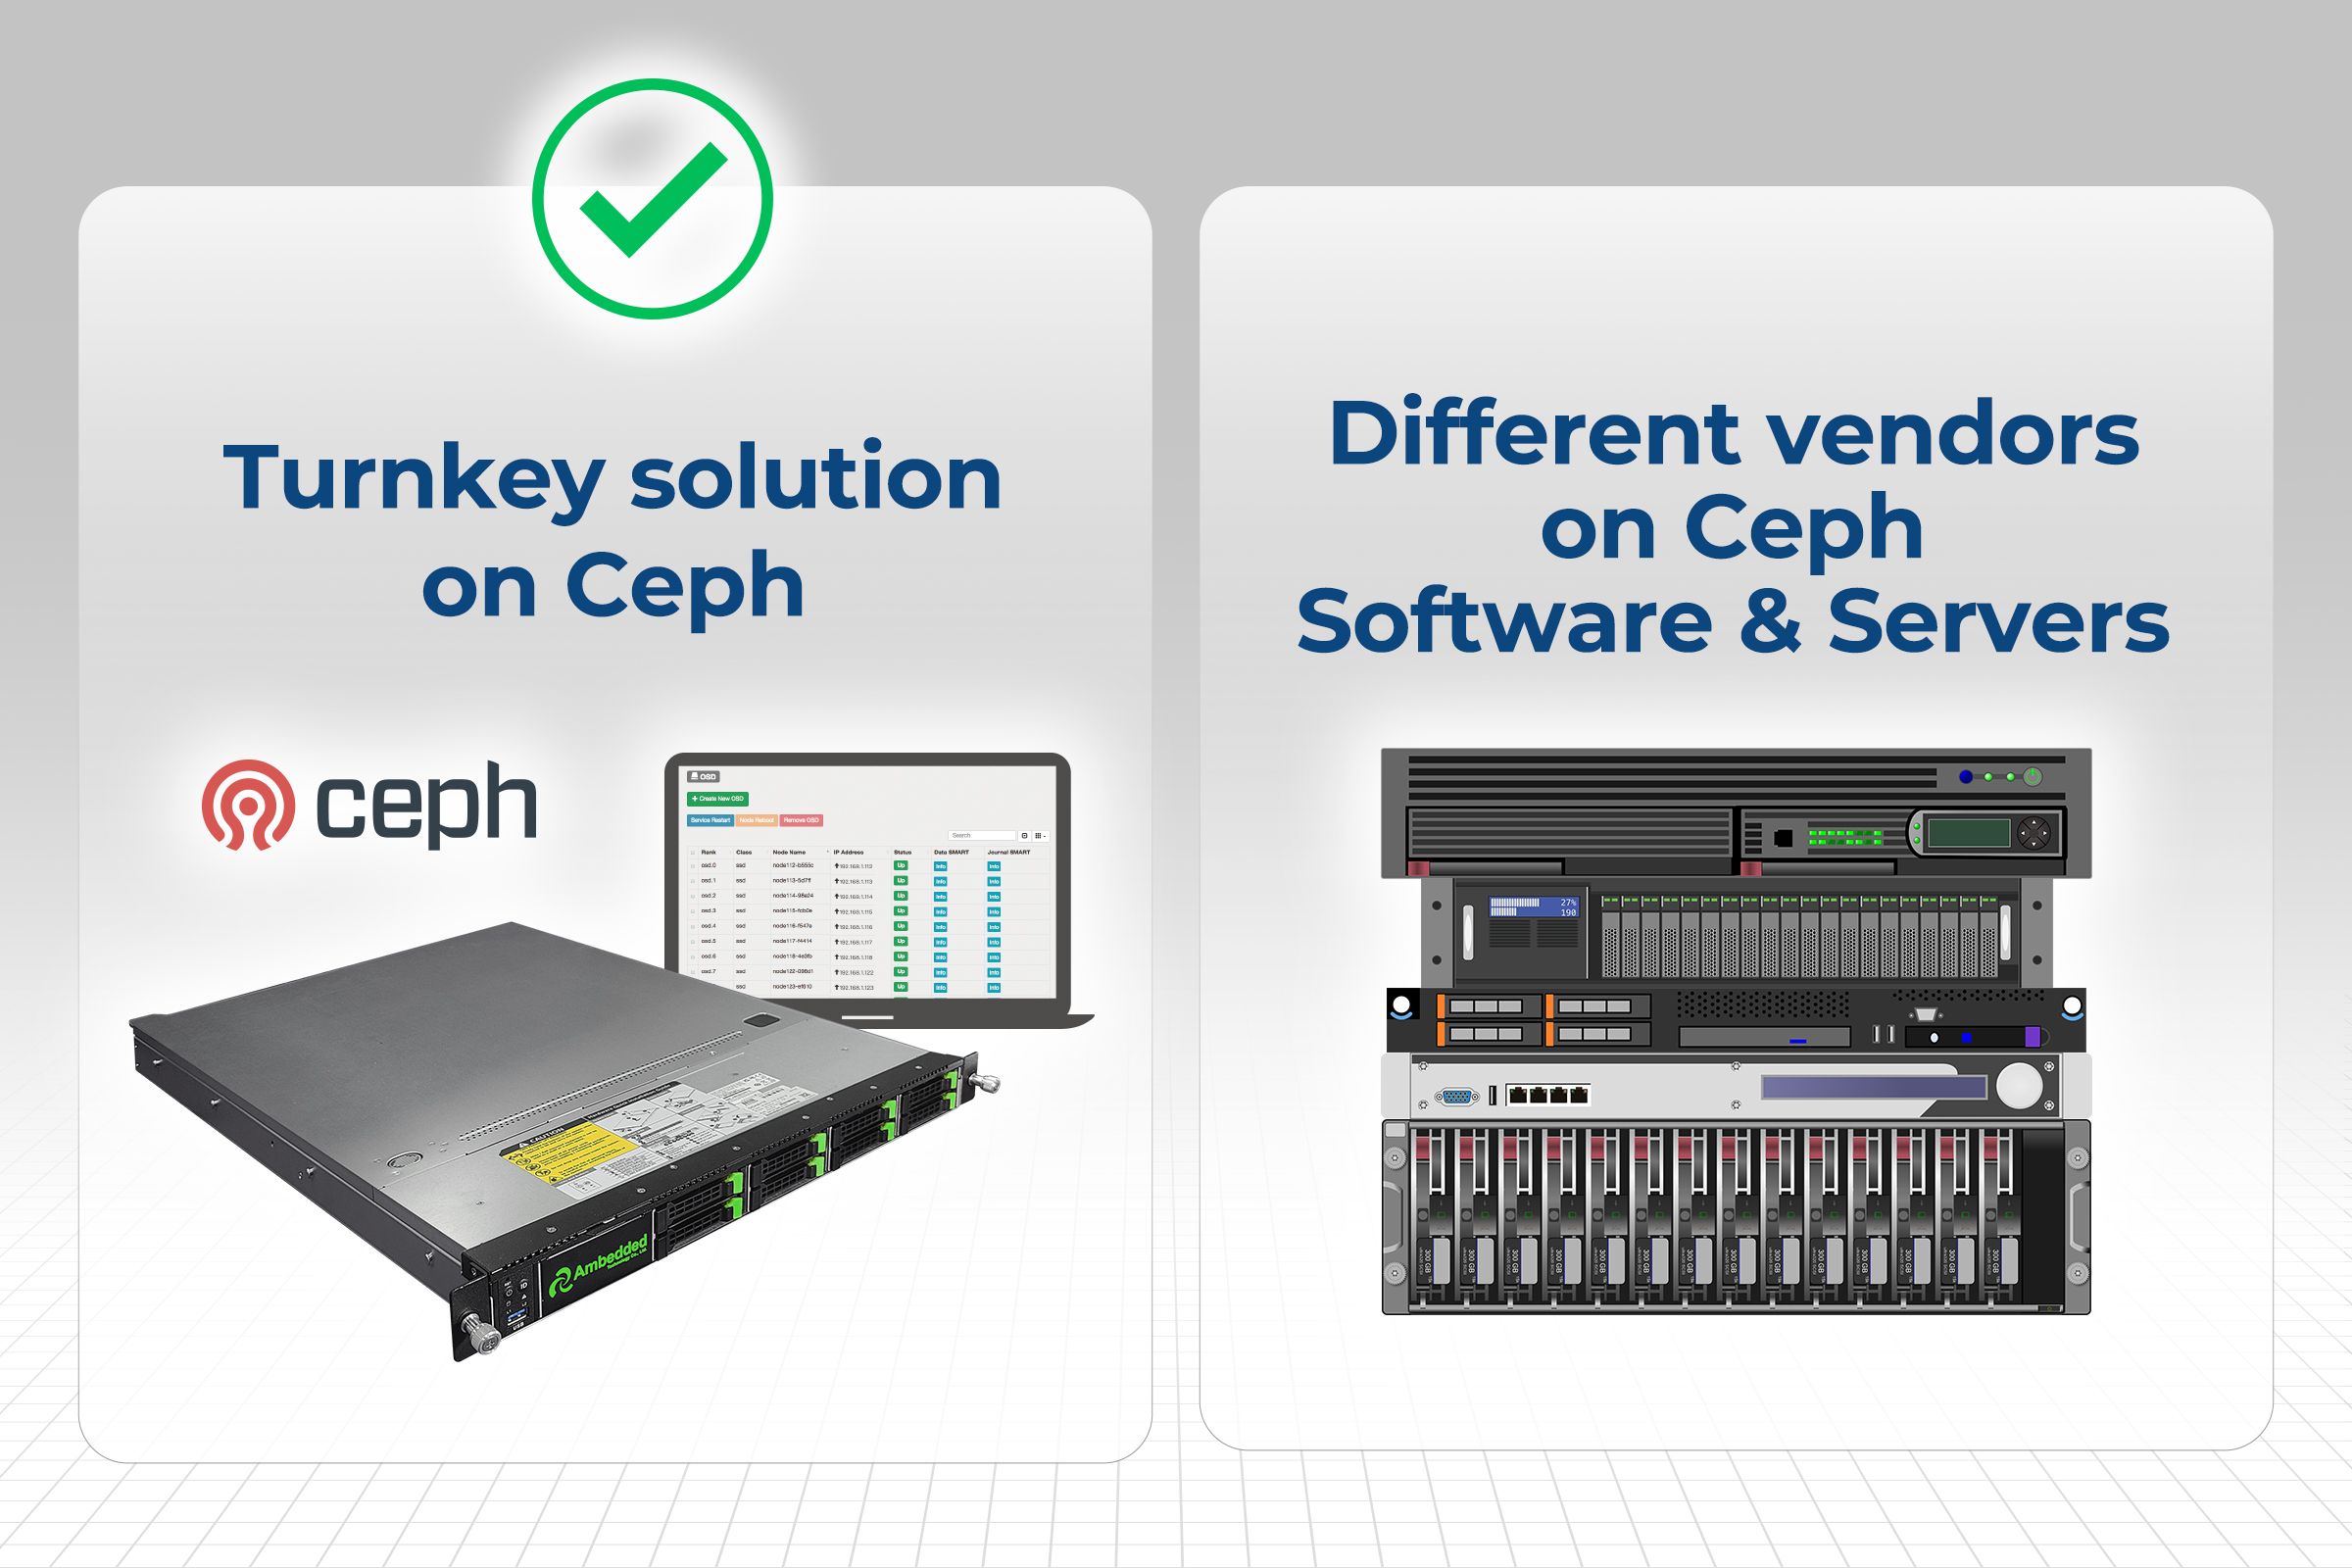 Gründe, warum die Ceph-Turnkey-Lösung (Ceph-Appliance) eine bessere Wahl ist als eine reine Softwarelösung, die auf verschiedenen Serverplattformen läuft.